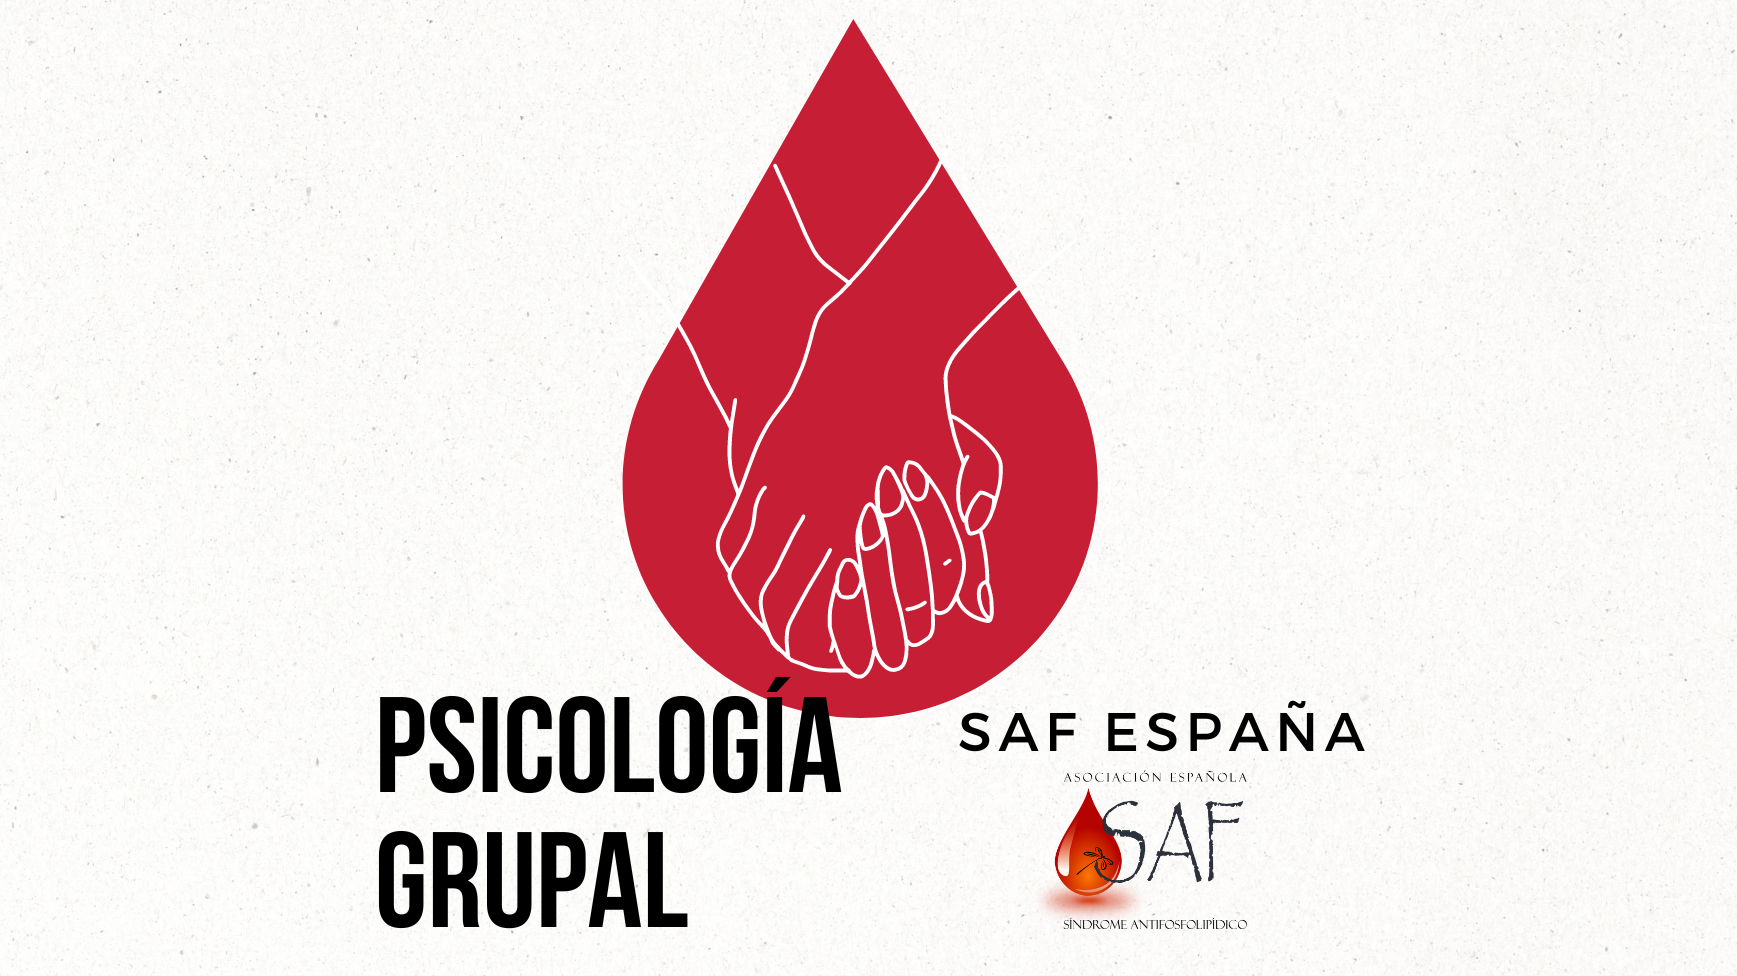 Proyecto de Psicología Grupal SAF España